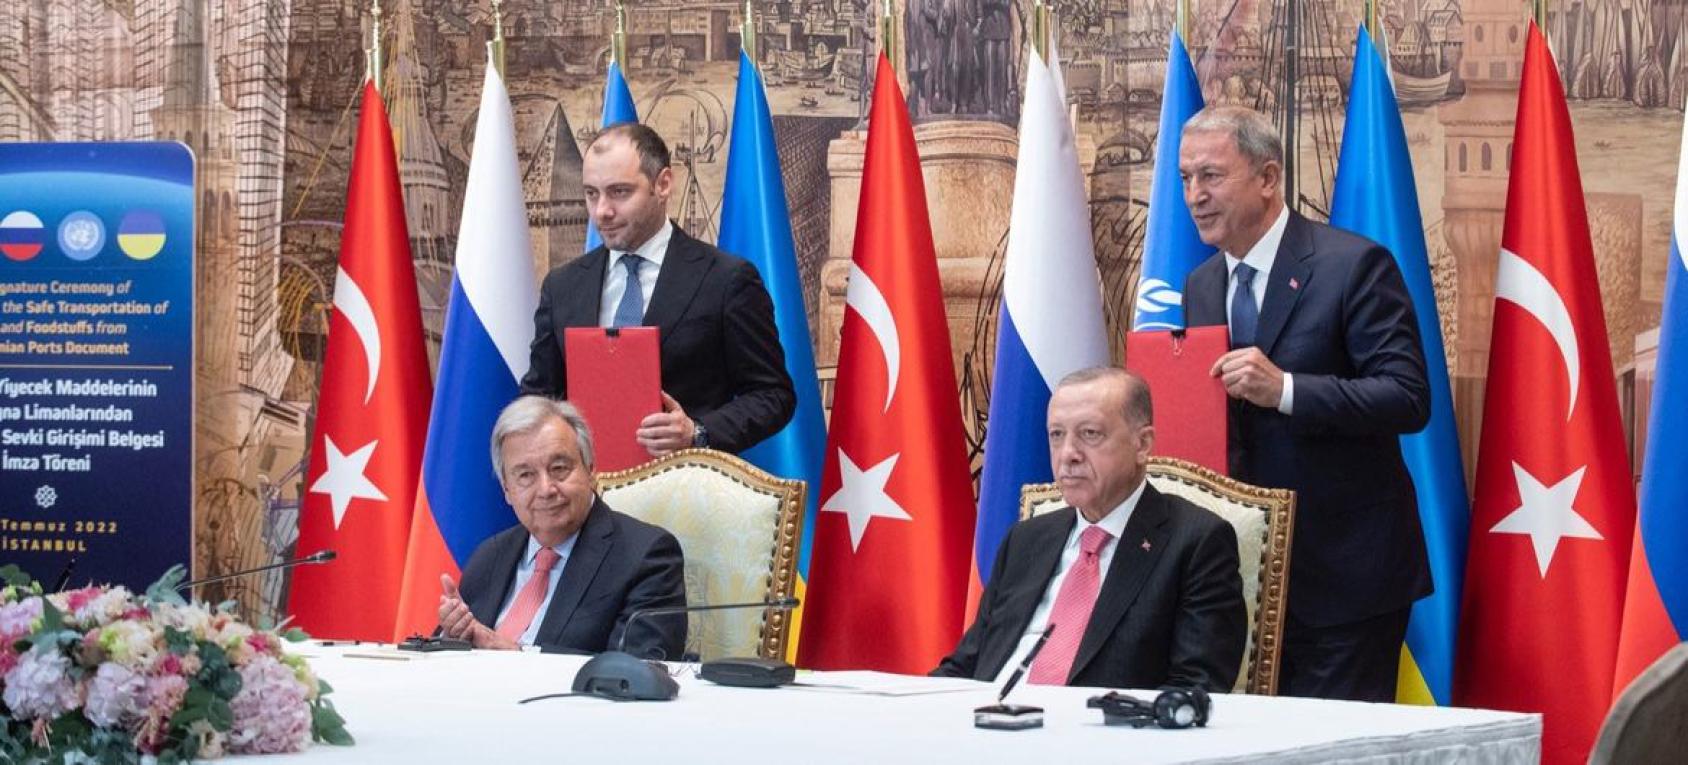 Генеральный секретарь ООН Антониу Гутерриш и президент Турции Реджеп Эрдоган во время церемонии подписания соглашения по Черному морю. 